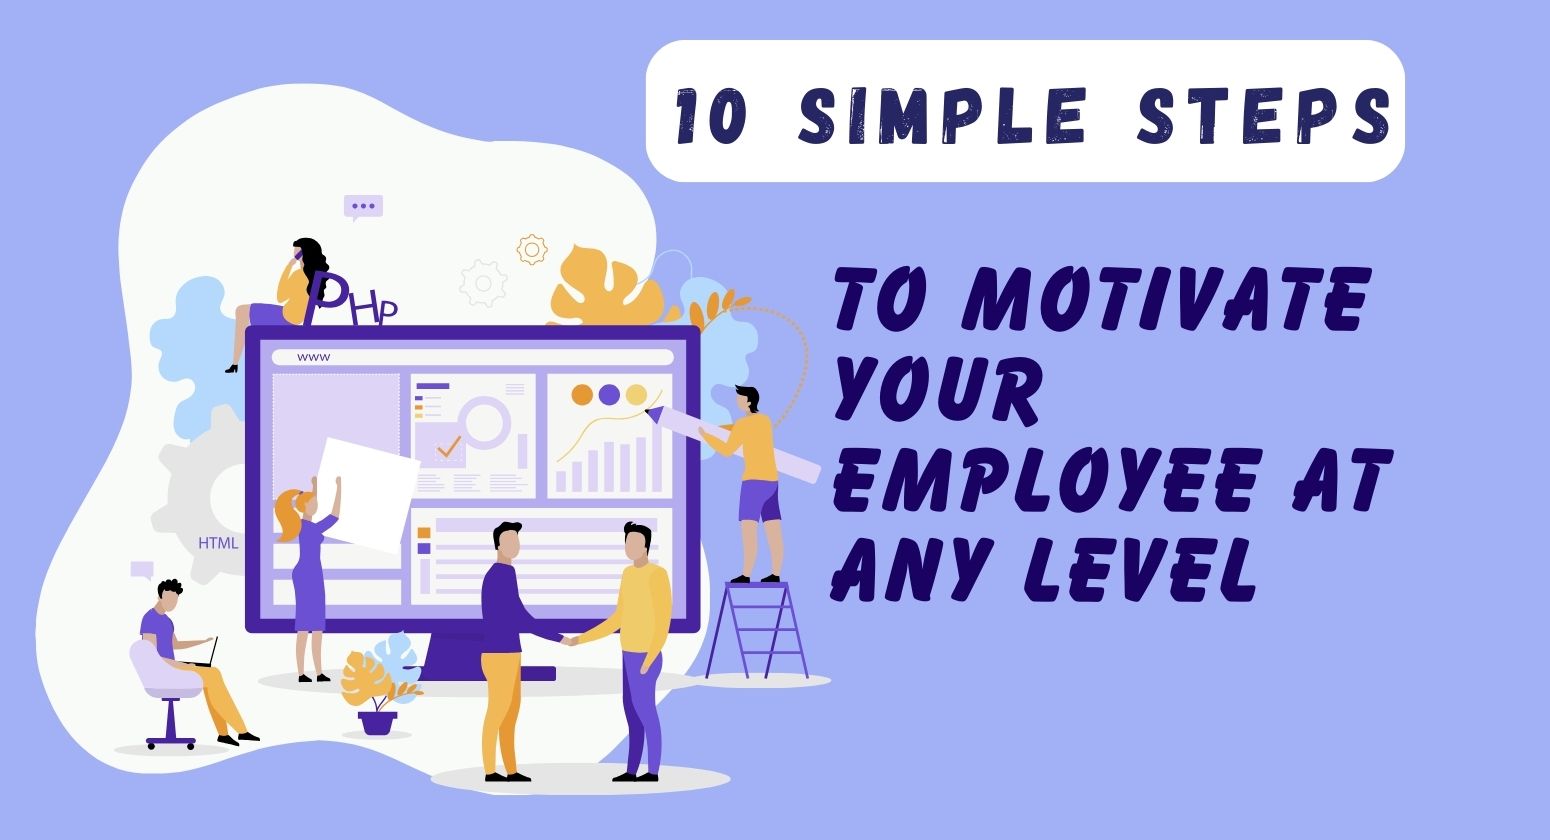 किसी भी स्तर पर अपने कर्मचारी को प्रेरित करने के लिए 10 सरल कदम